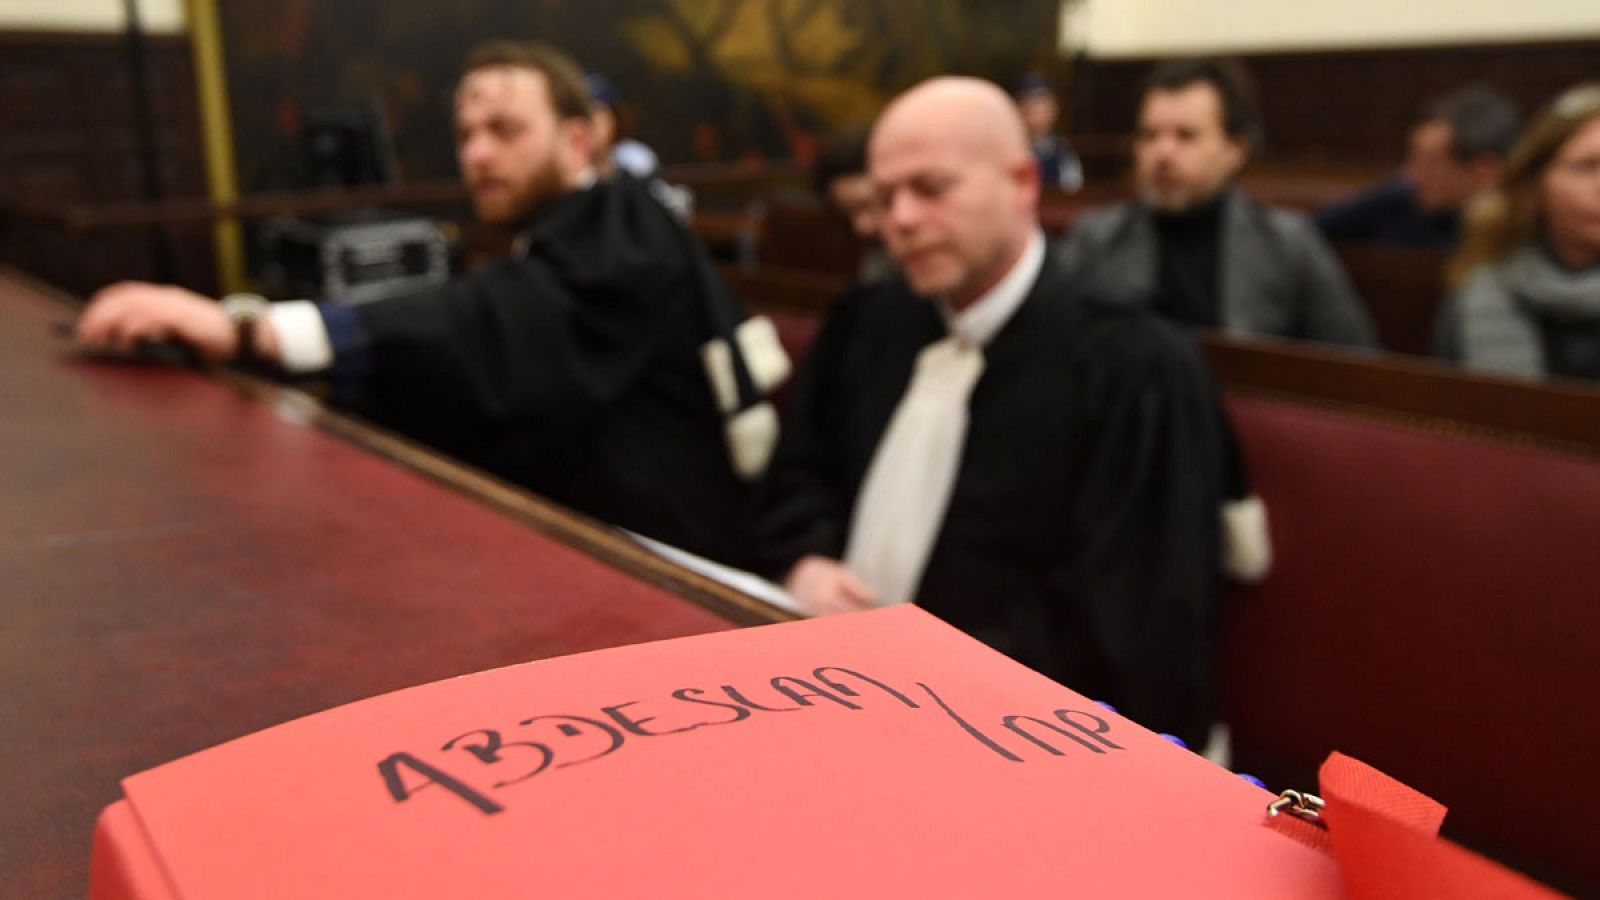 El dossier del caso Abdeslam en la sala del Palacio de Justicia de Bruselas, delante los abogados defensores en Bélgica del supuesto terrorista